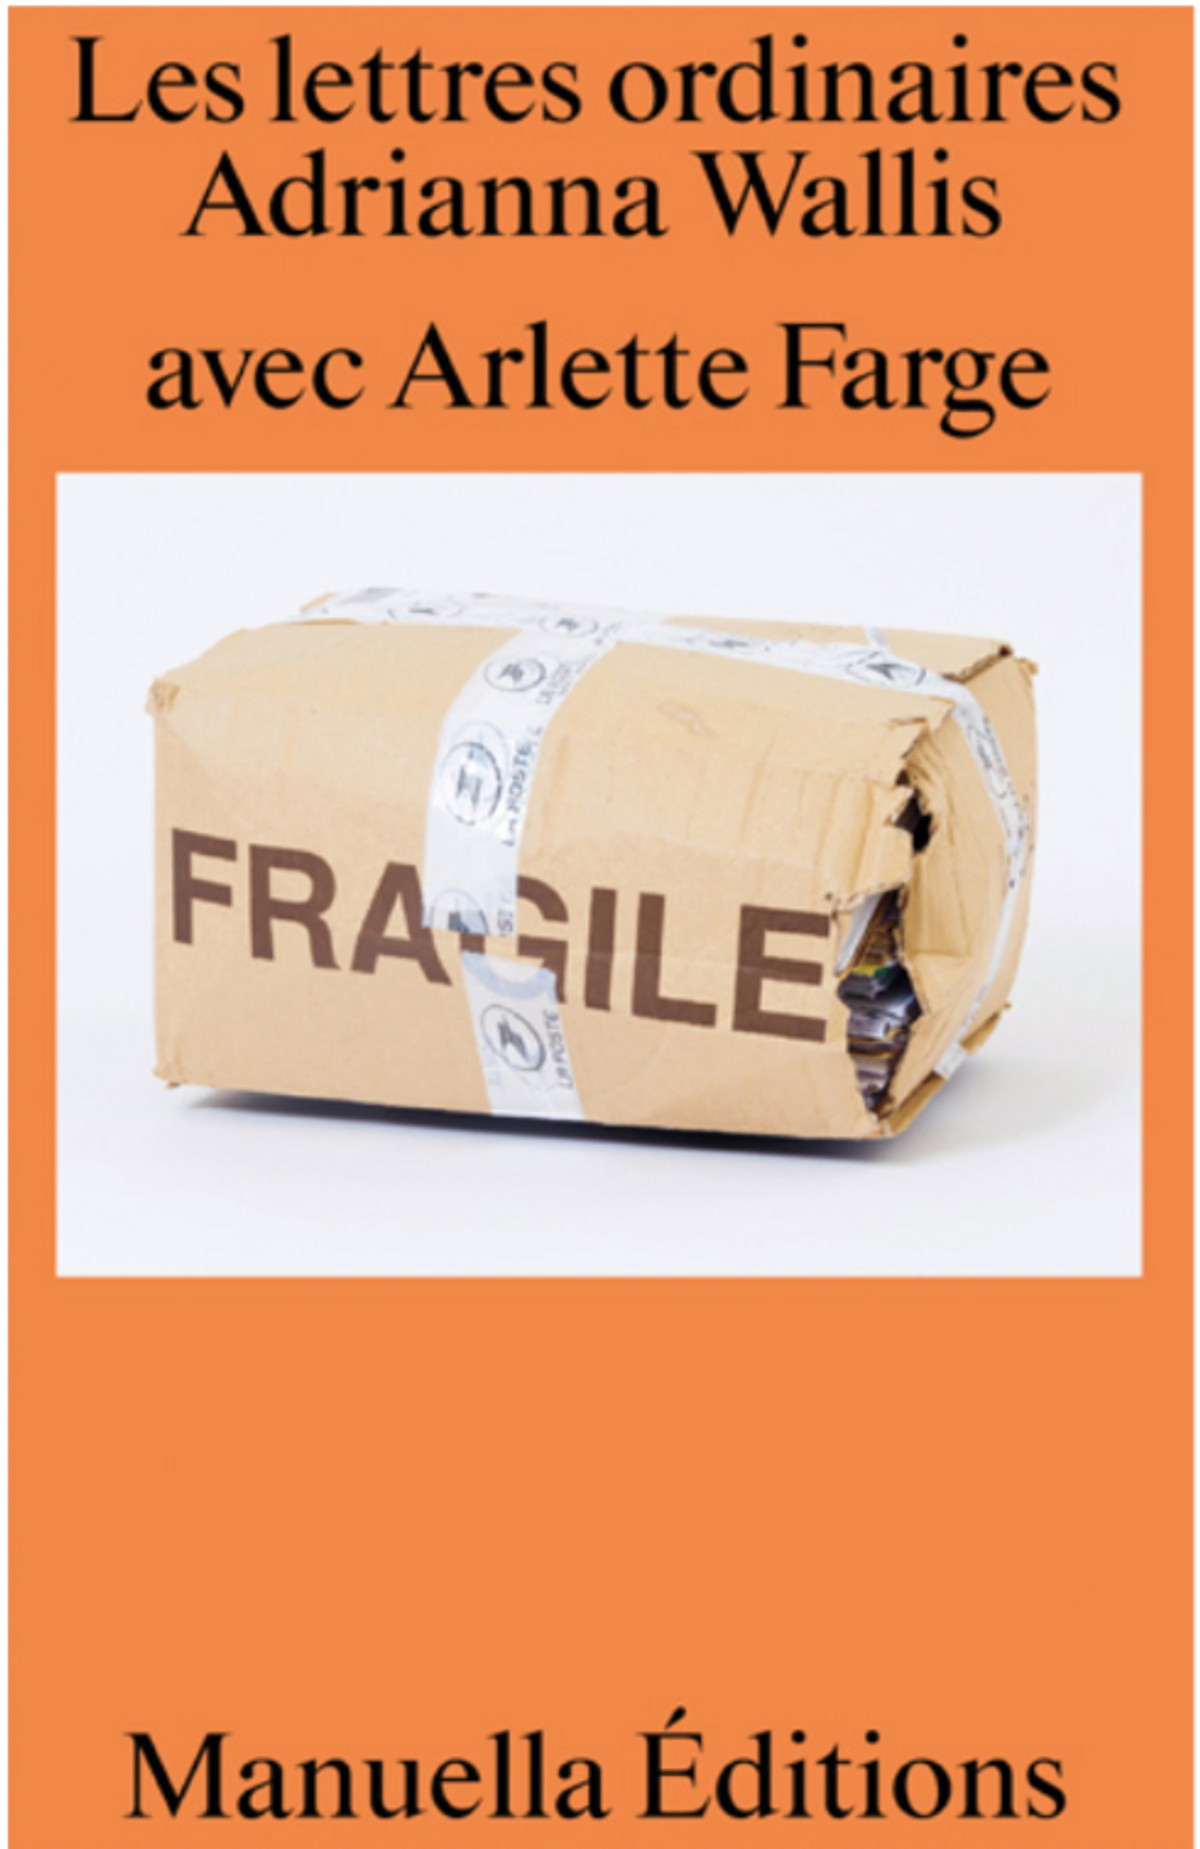 Adrianna Wallis avec Arlette Farge, Les Lettres ordinaires, Paris, Manuella Éditions, 2023, 240 pages, 22 euros.